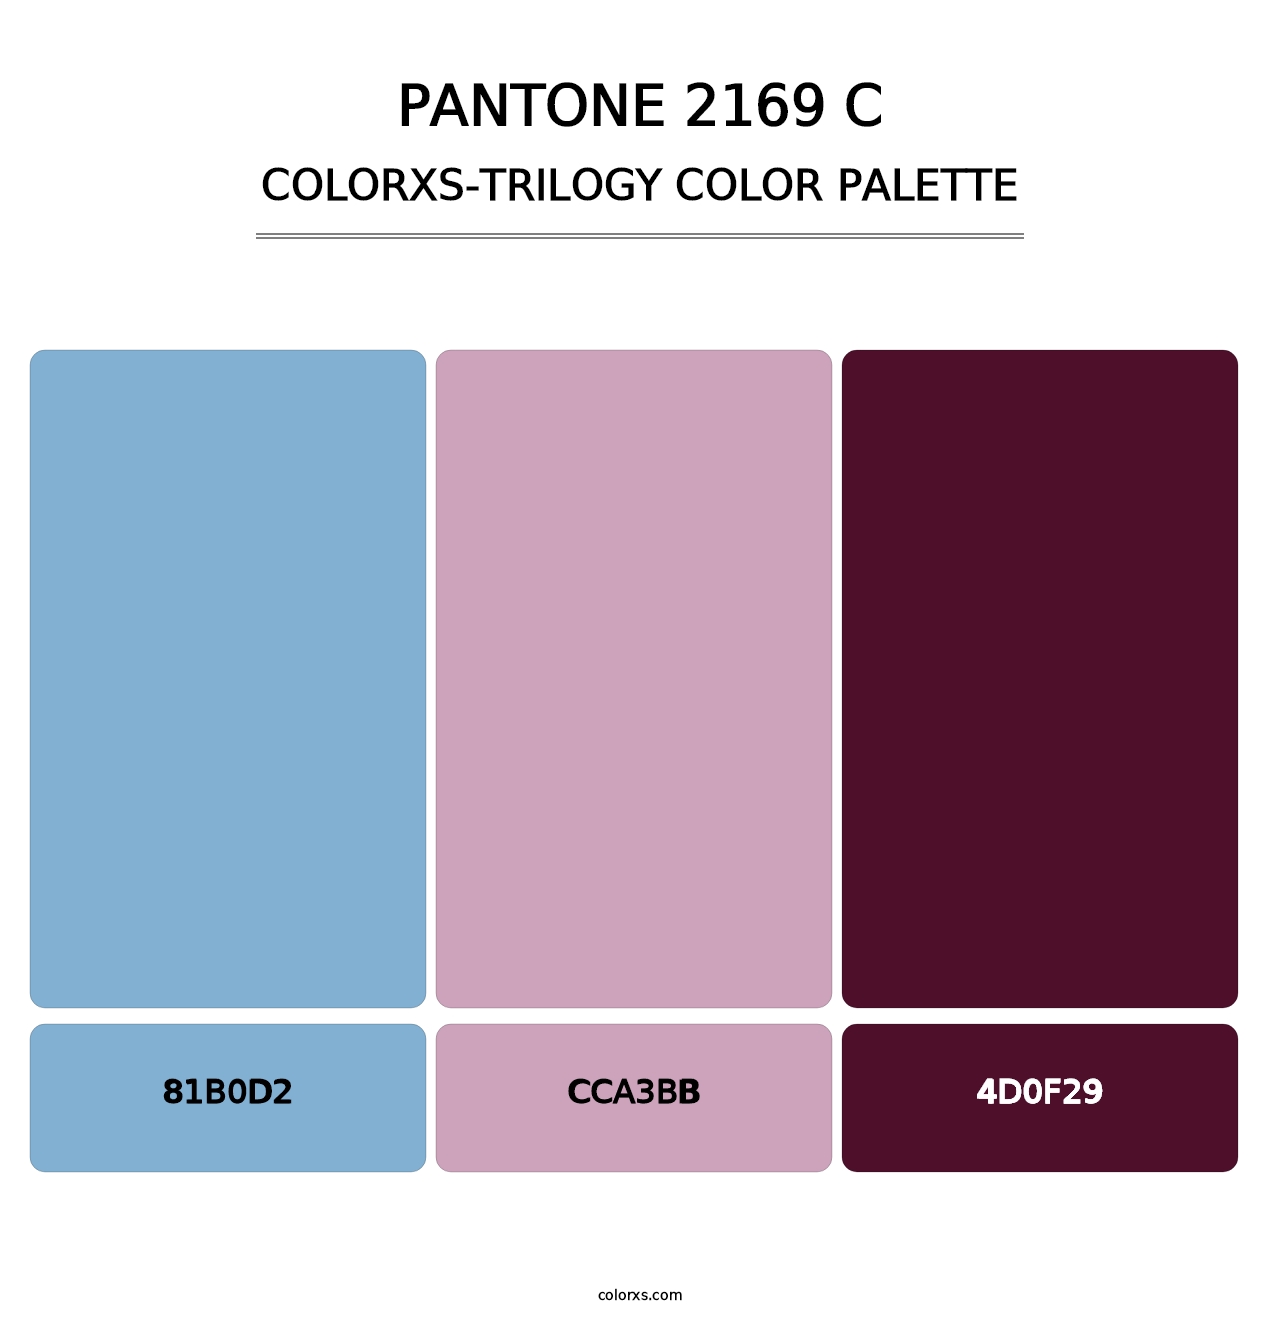 PANTONE 2169 C - Colorxs Trilogy Palette